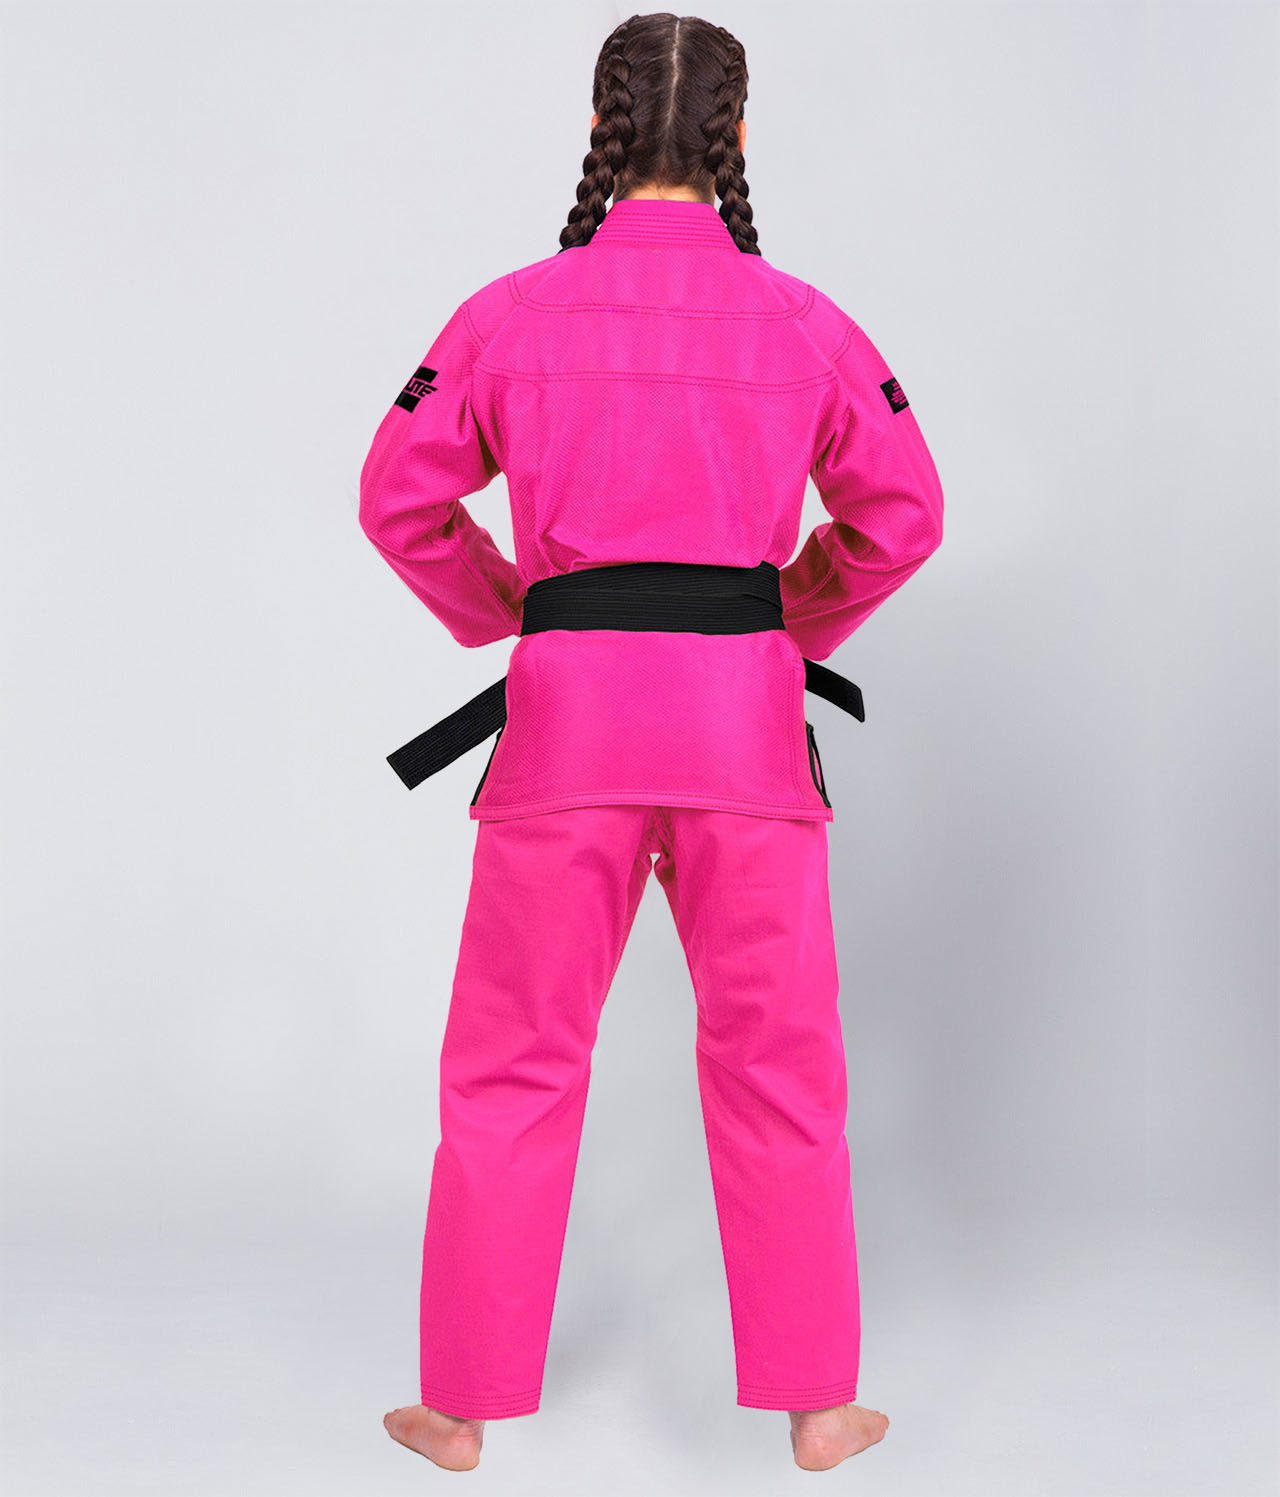 Women's Core Pink Brazilian Jiu Jitsu BJJ Gi